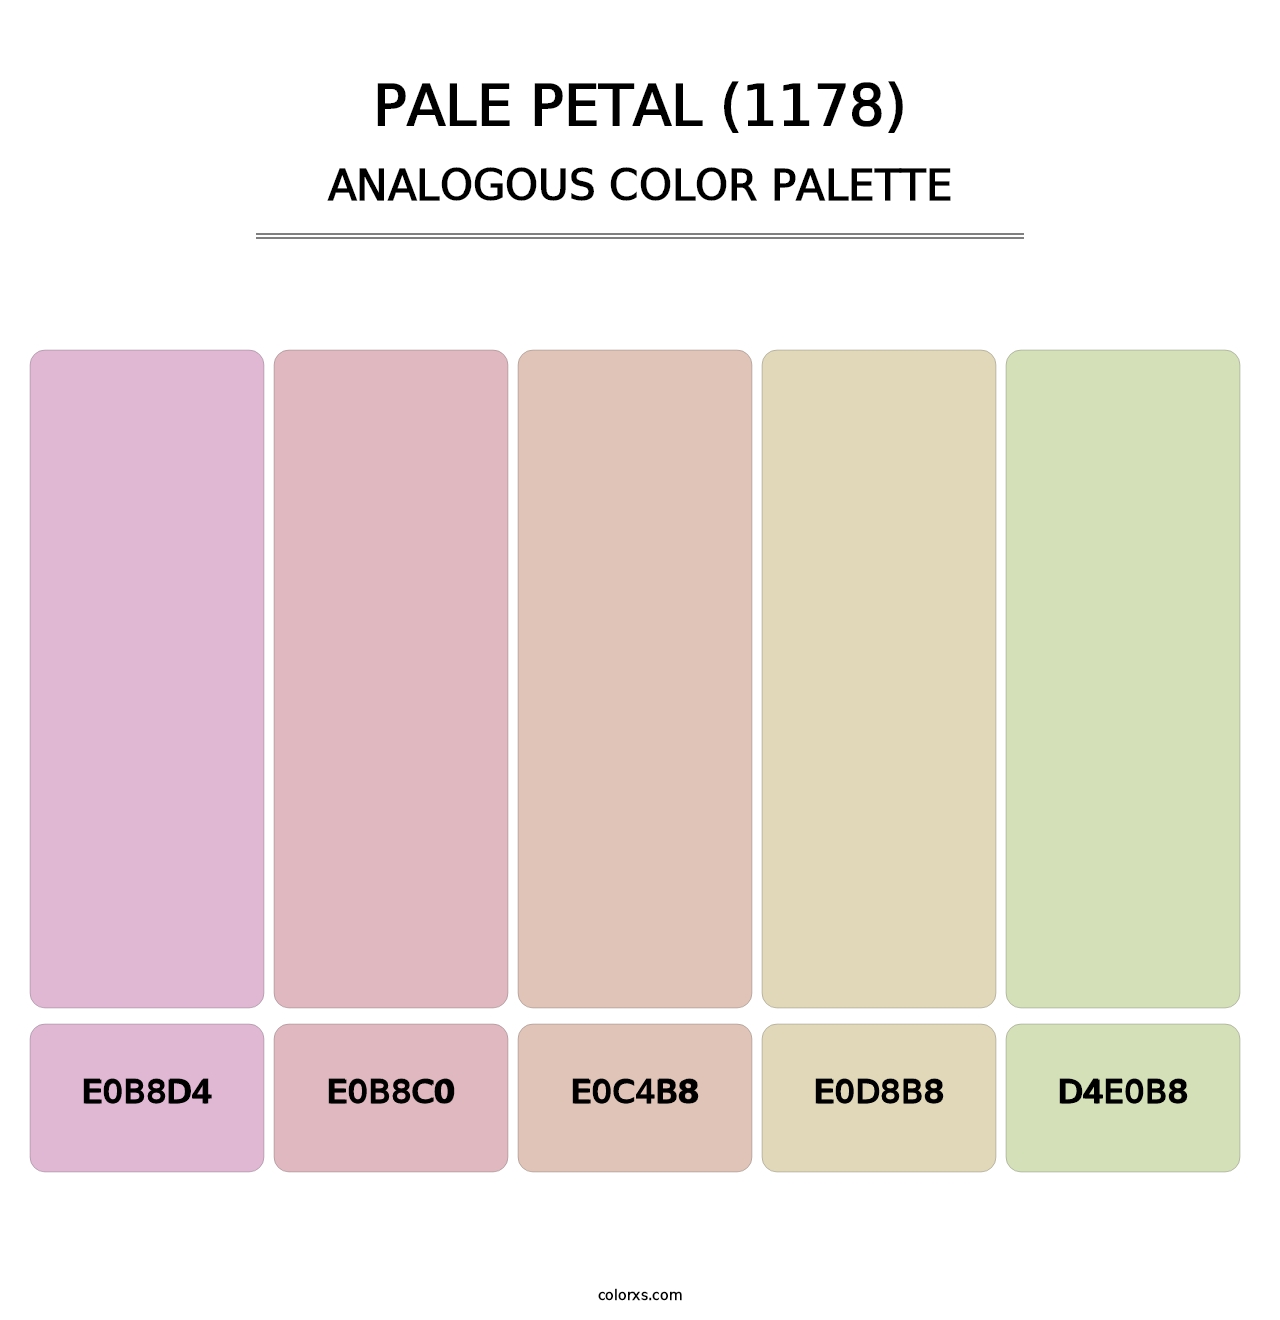 Pale Petal (1178) - Analogous Color Palette